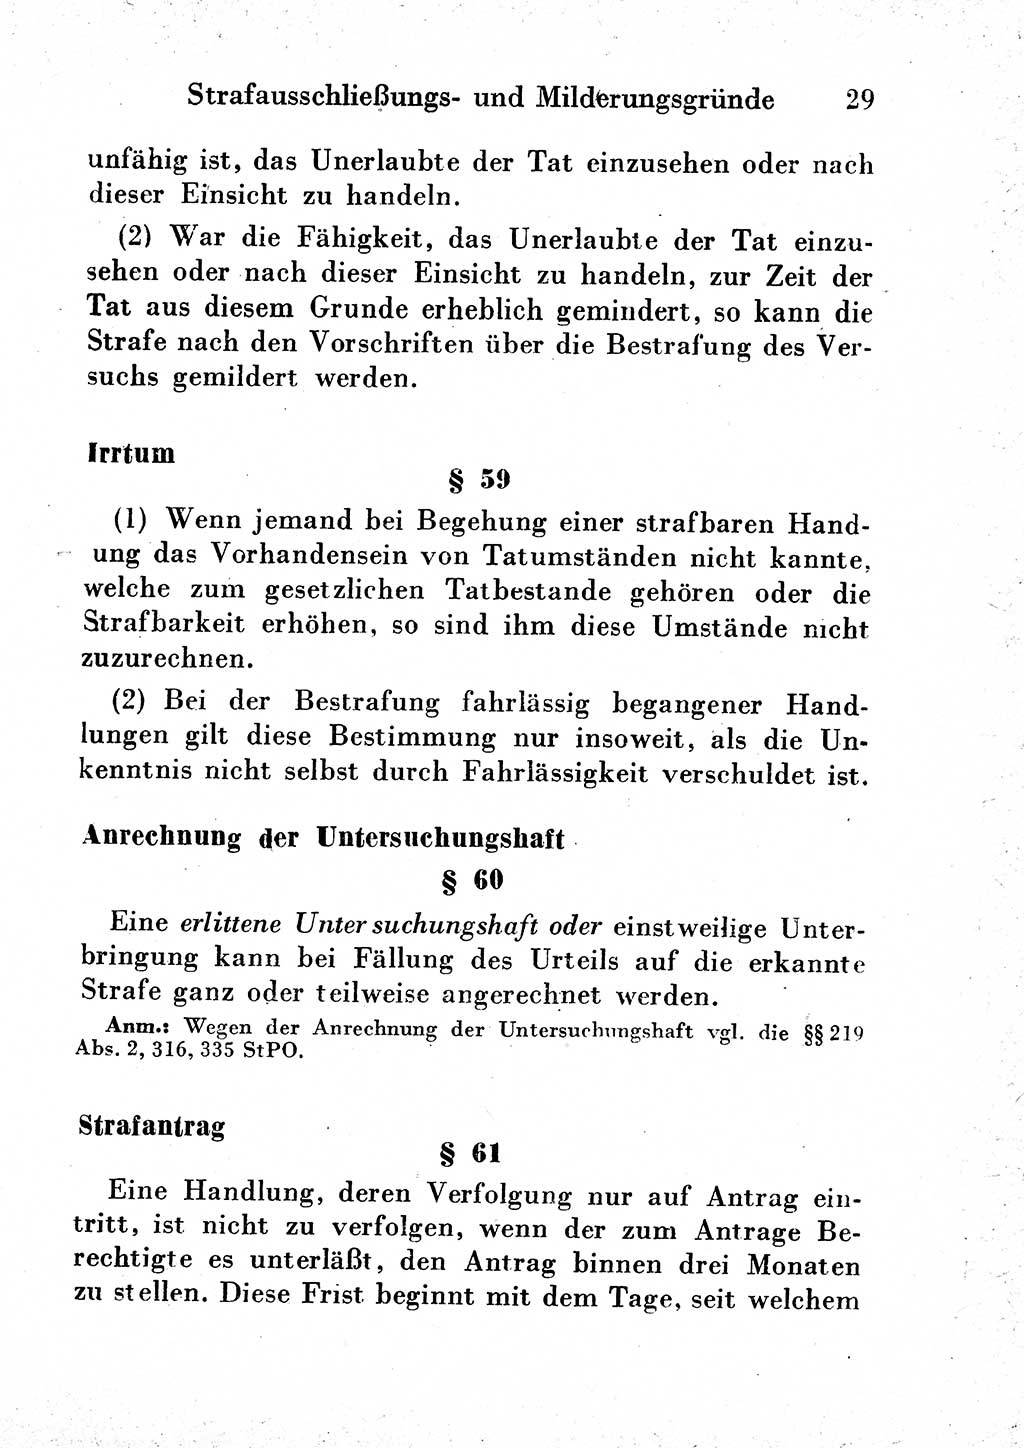 Strafgesetzbuch (StGB) und andere Strafgesetze [Deutsche Demokratische Republik (DDR)] 1954, Seite 29 (StGB Strafges. DDR 1954, S. 29)